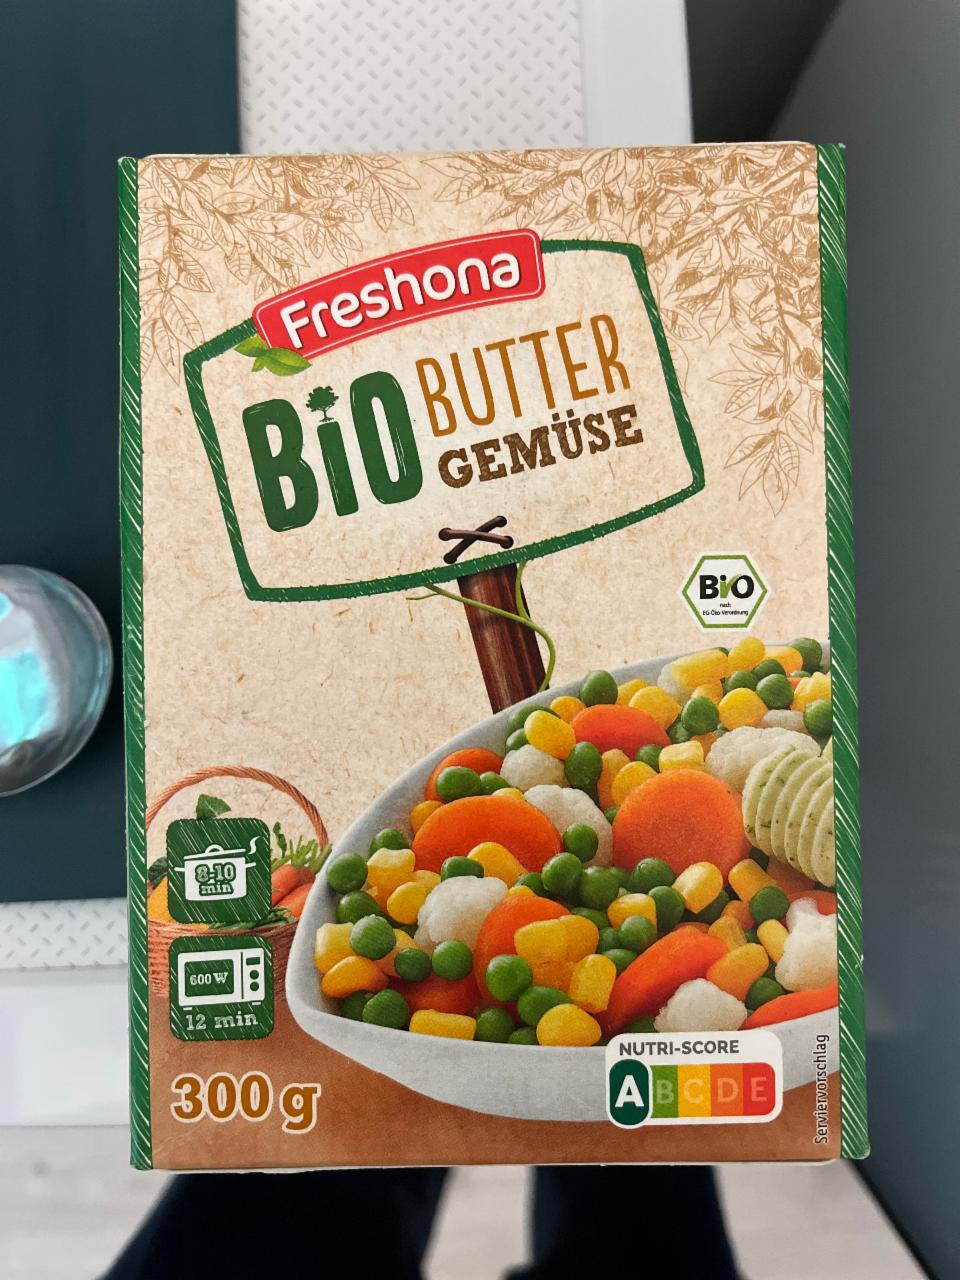 Фото - замороженные овощи смесь Butter Gemüse Freshona